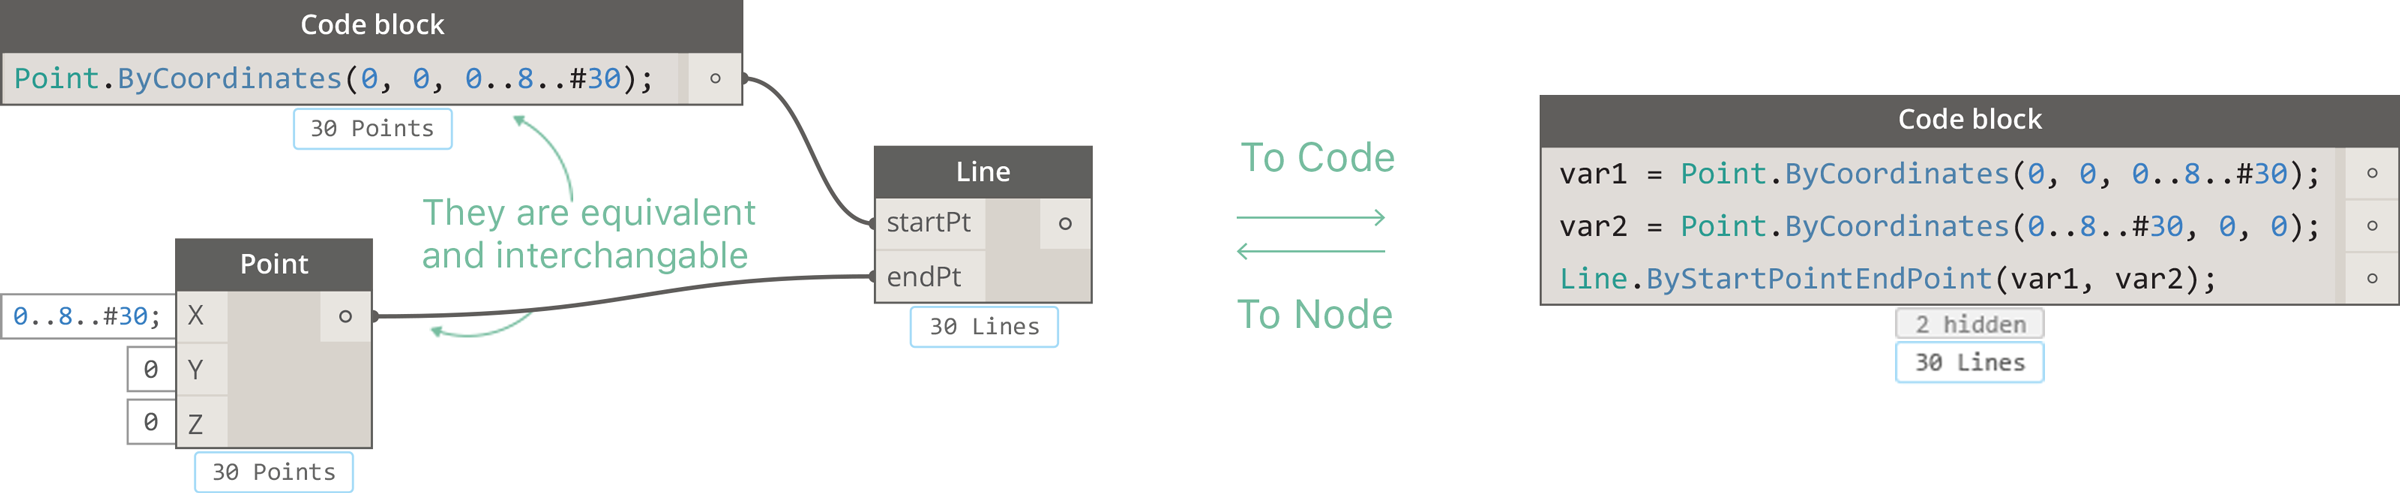 Code to node